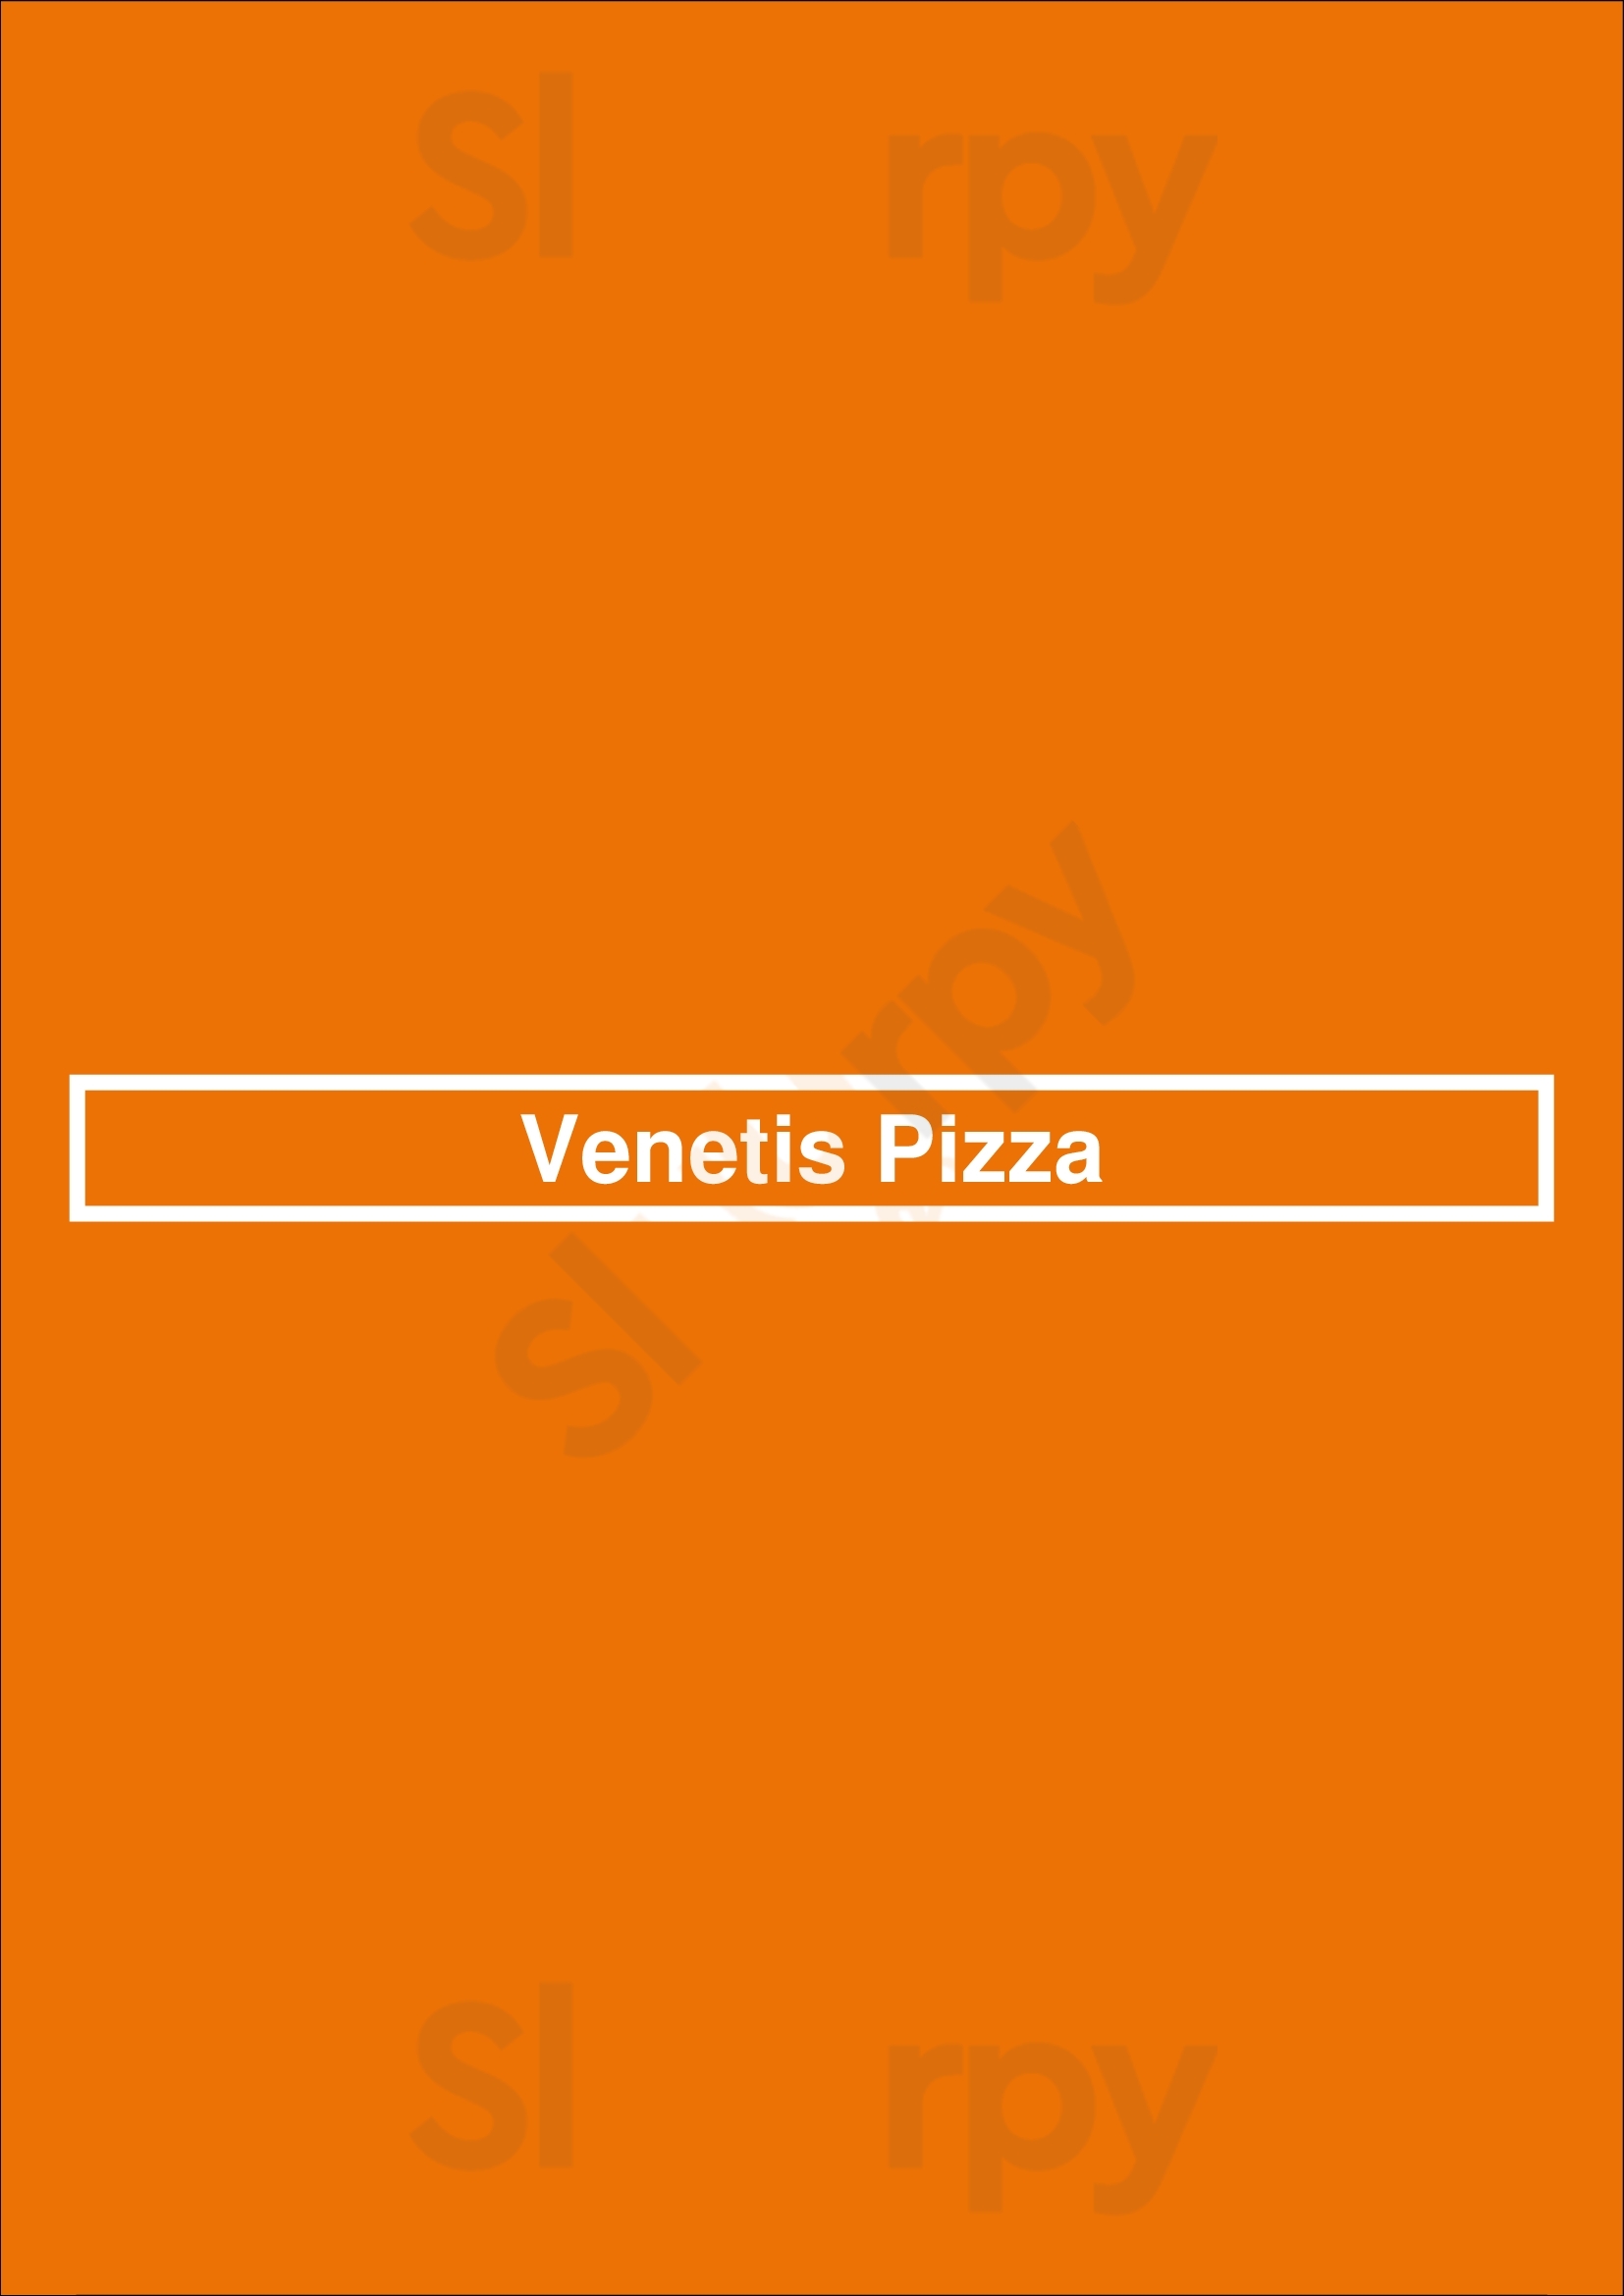 Venetis Pizza Surrey Menu - 1